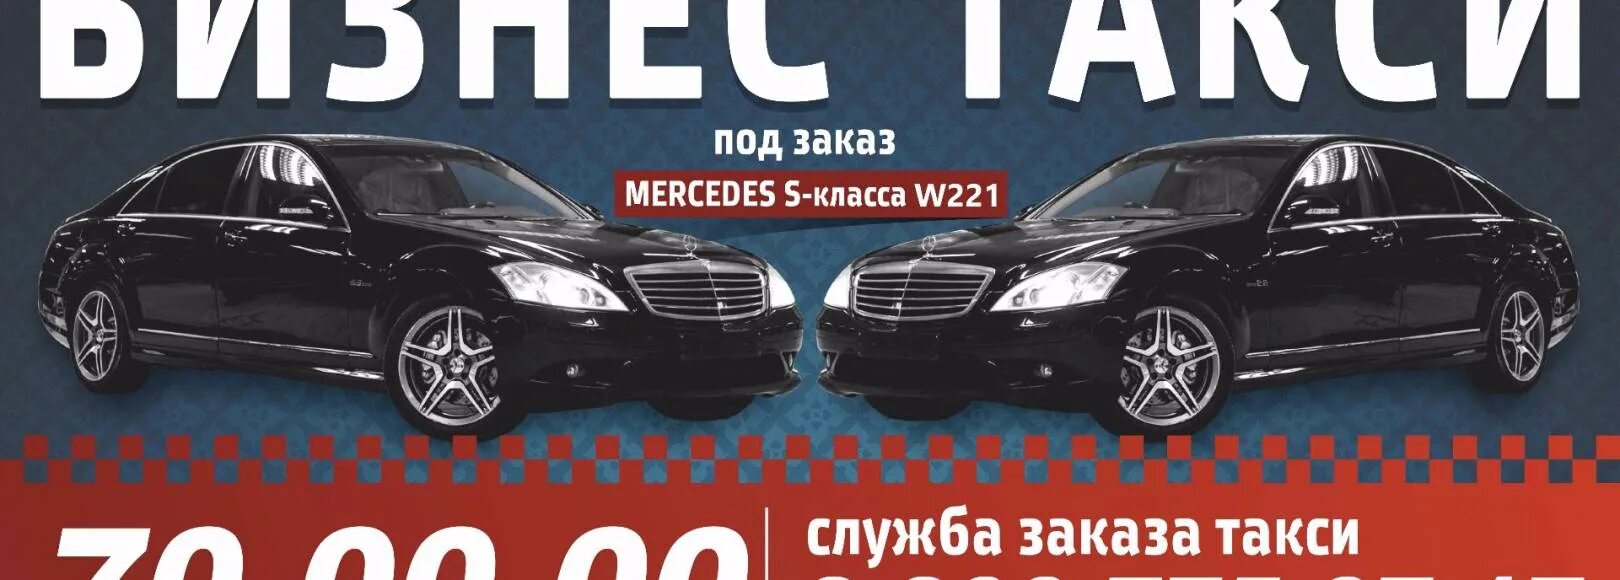 Вызвать такси в волгограде. Такси бизнес класса. Бизнес такси Волгоград. Вип такси Волгоград. Такси в Волгограде номера телефонов.